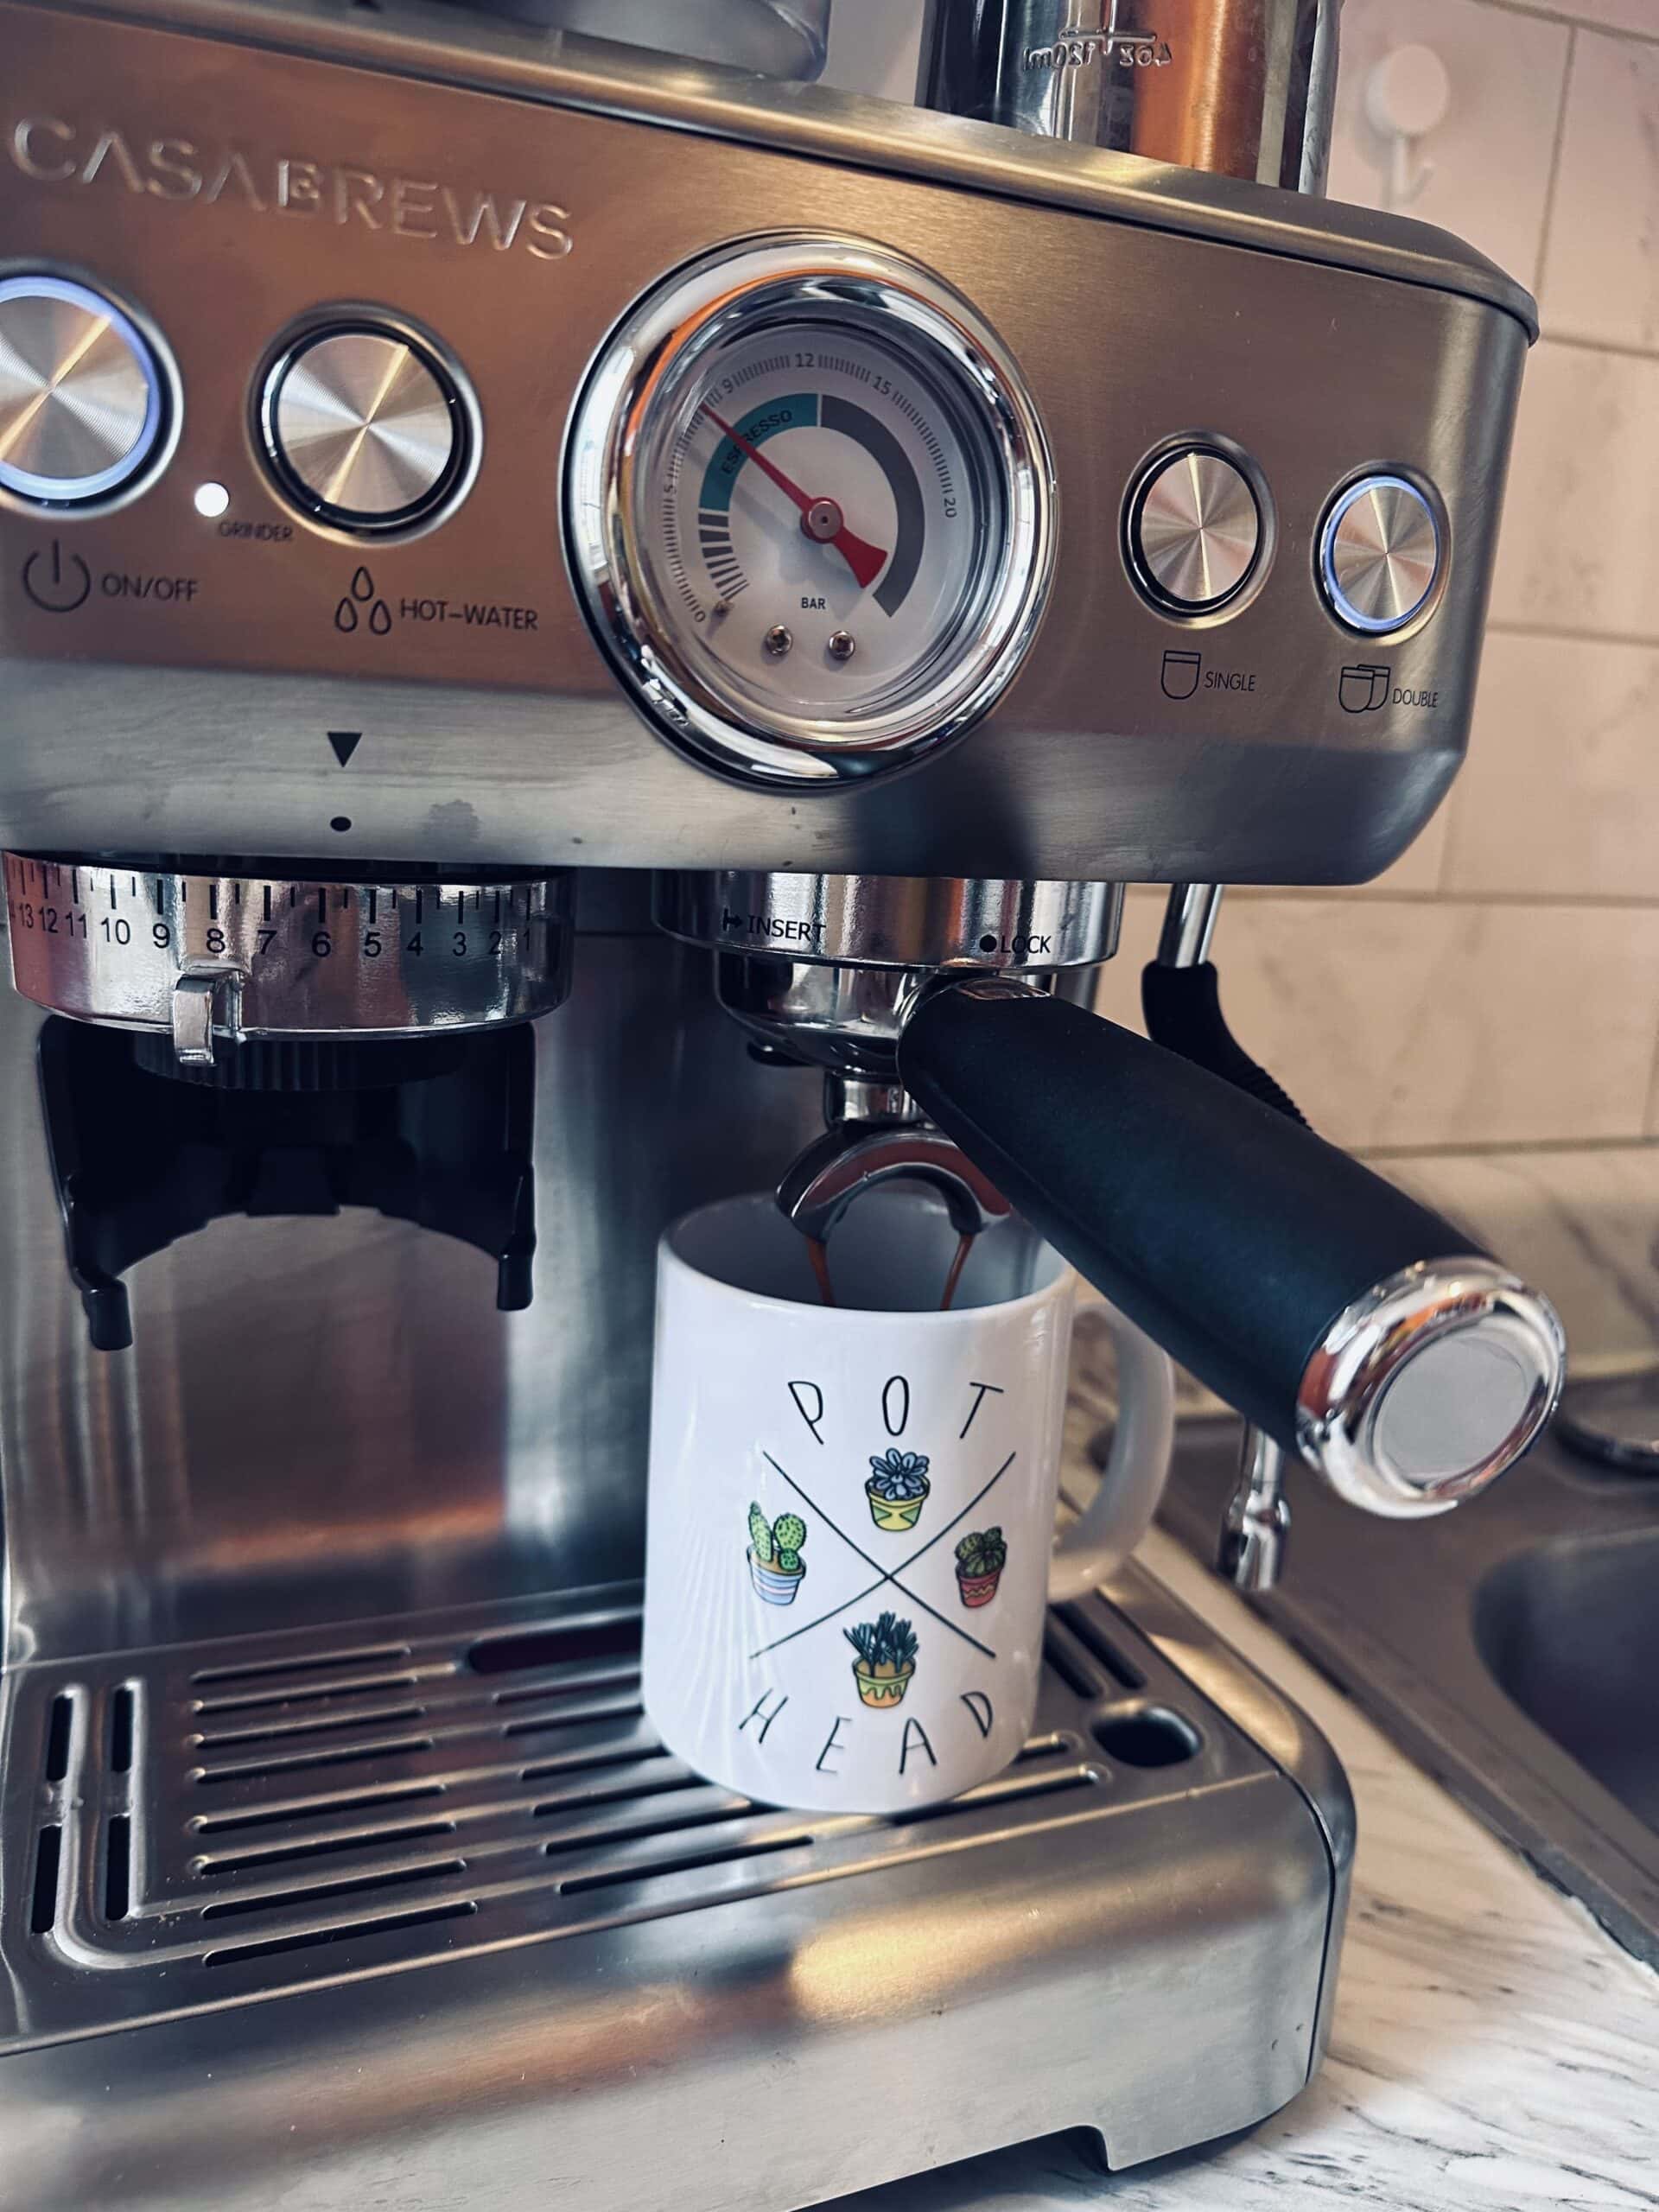 Casabrews Espresso Machine brews a cup of espresso